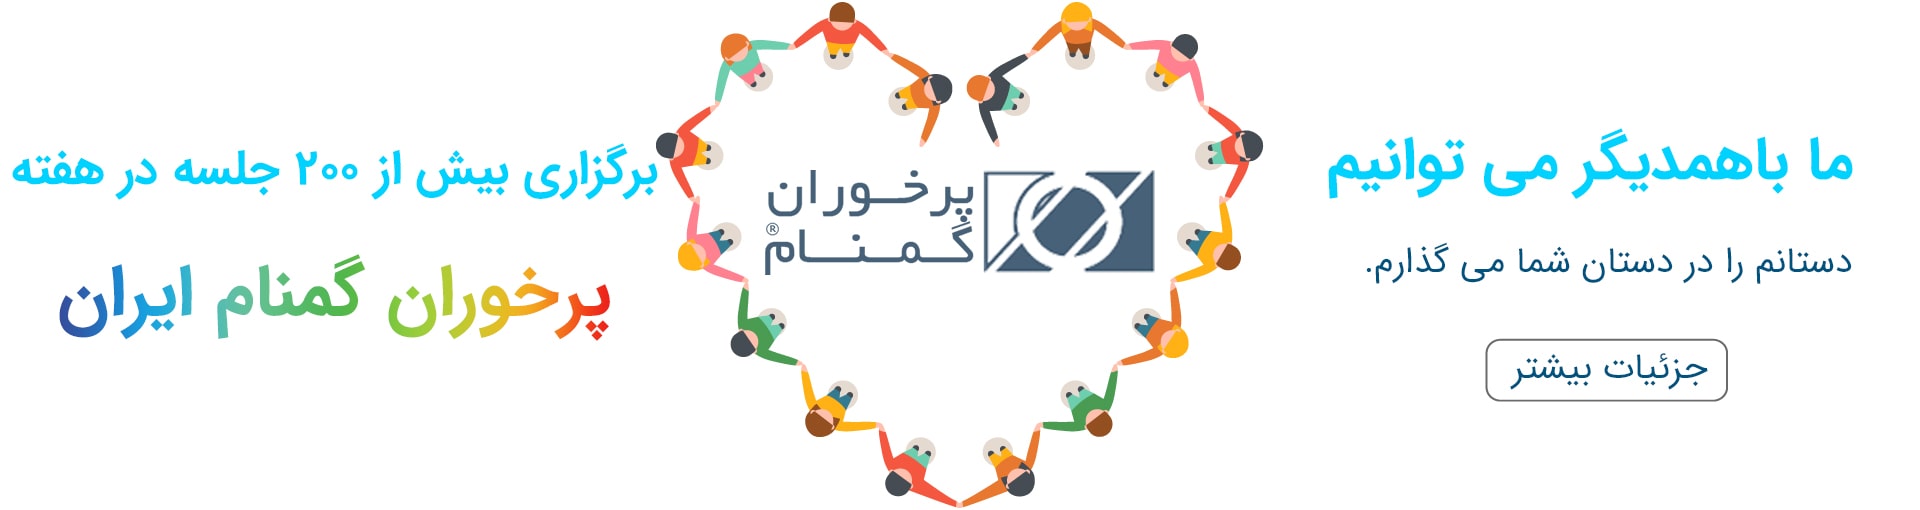 برگزاری بیش از 160 جلسه در هفته در سراسر ایران انجمن پرخوران گمنام